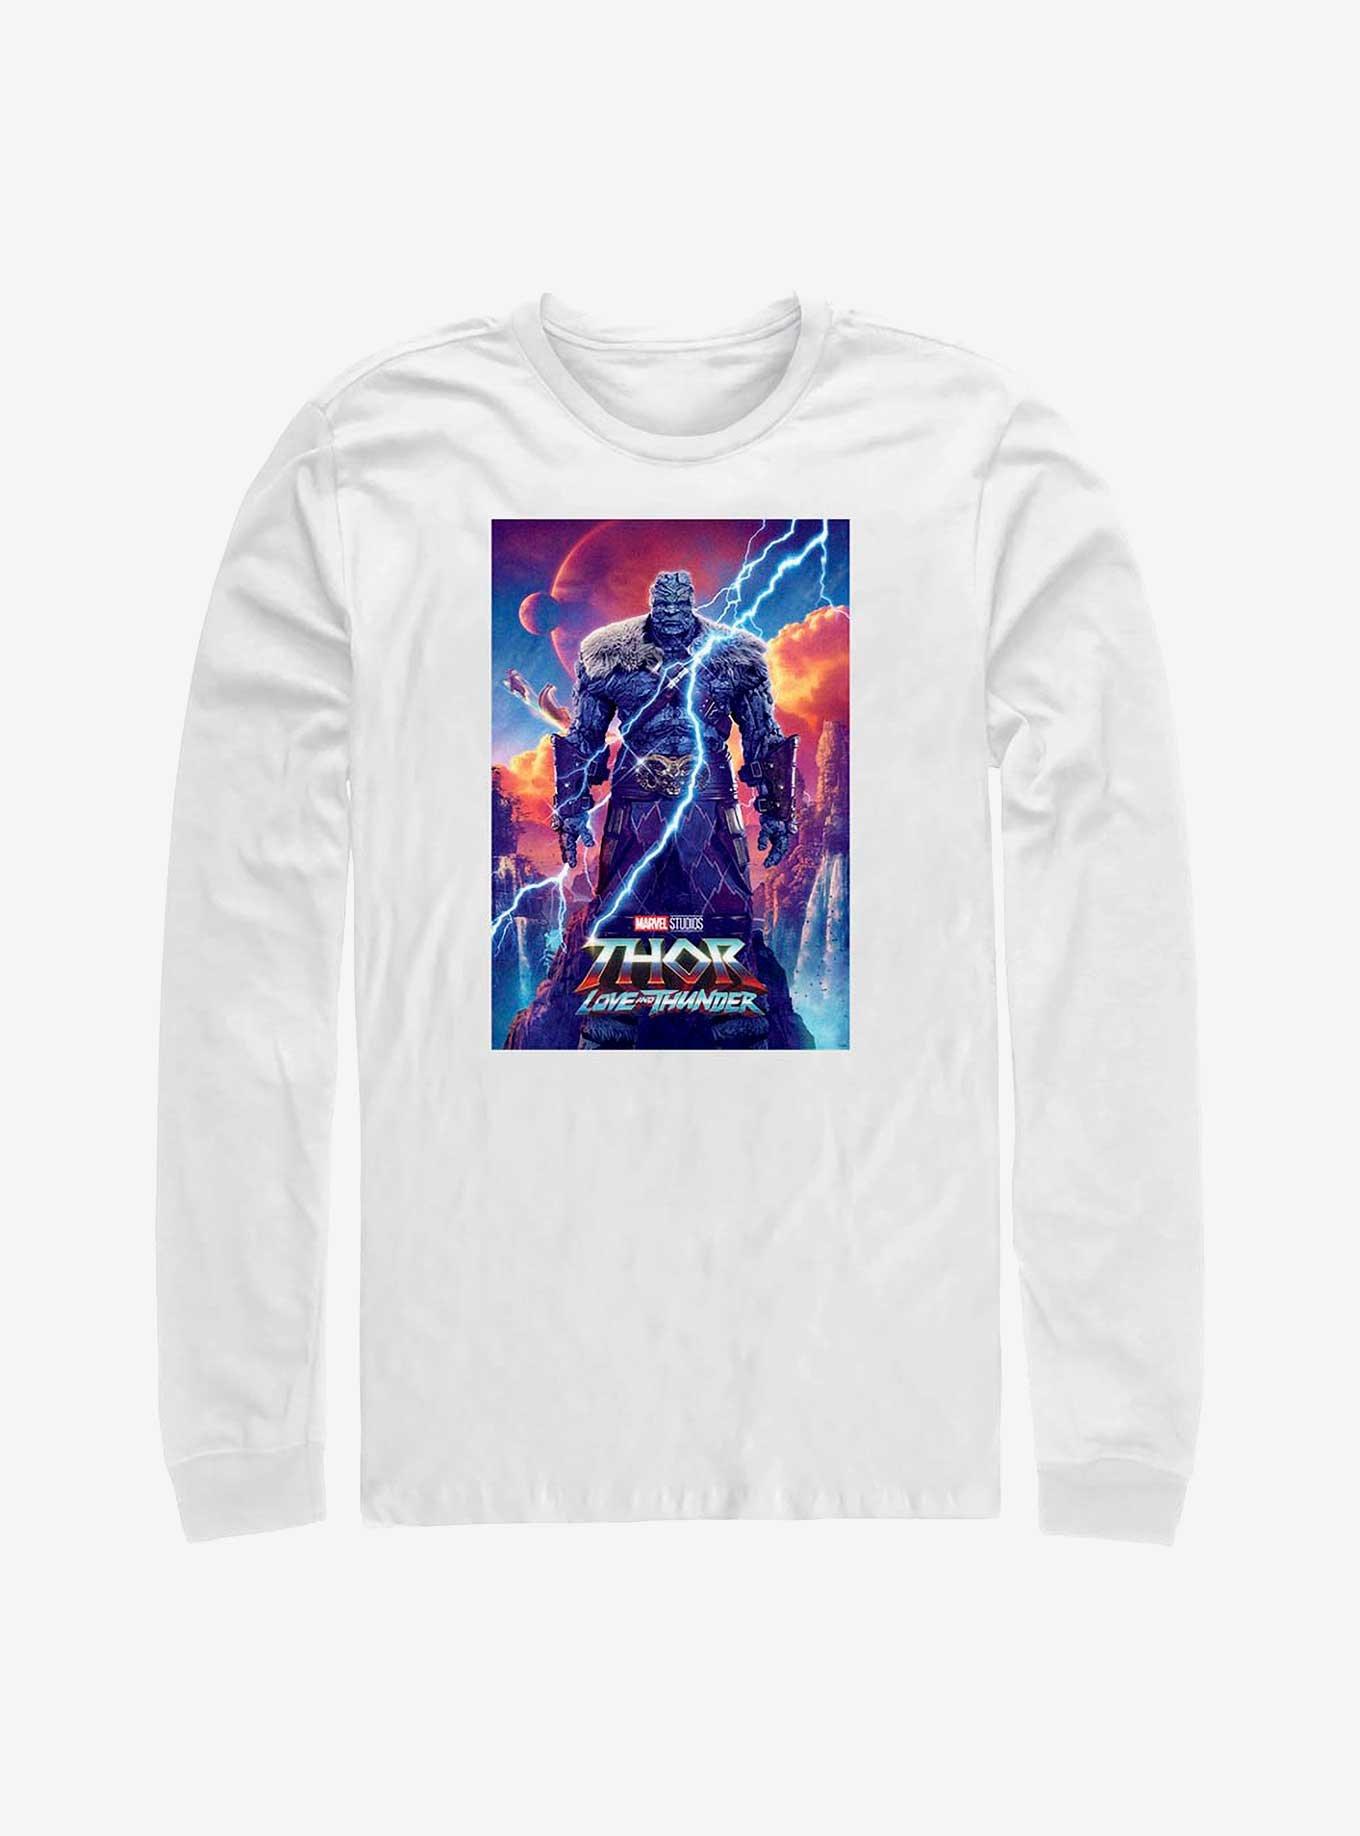 Marvel Thor: Love and Thunder Korg Movie Poster Long-Sleeve T-Shirt